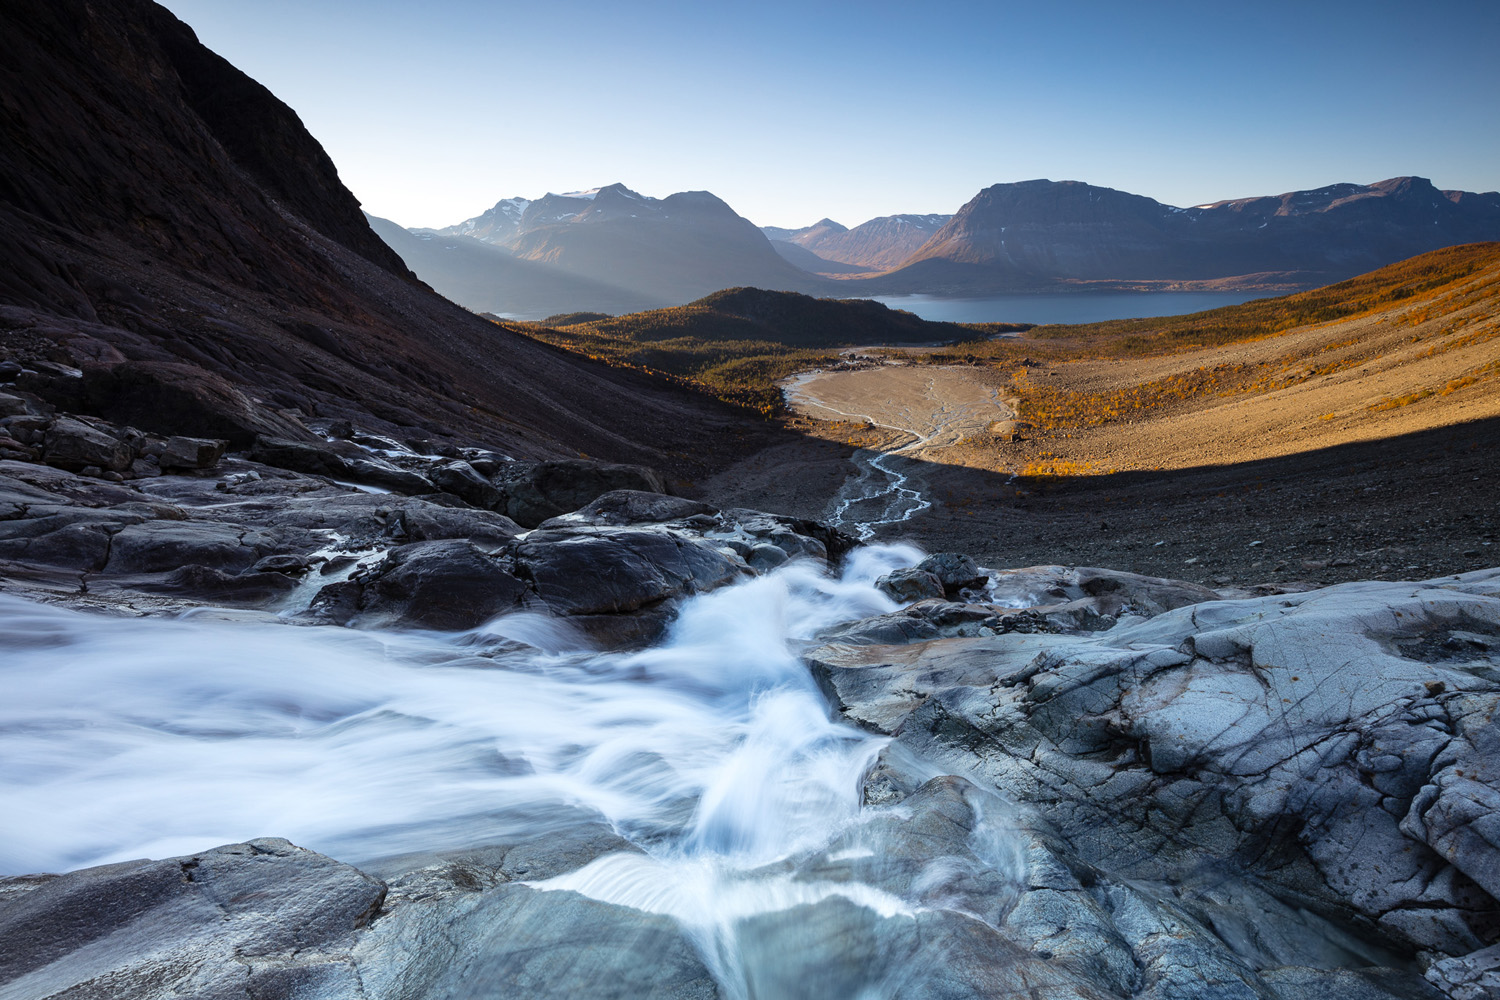 cascade dans les Alpes de Lyngen, durant un voyage photo en Norvège pendant la ruska en automne